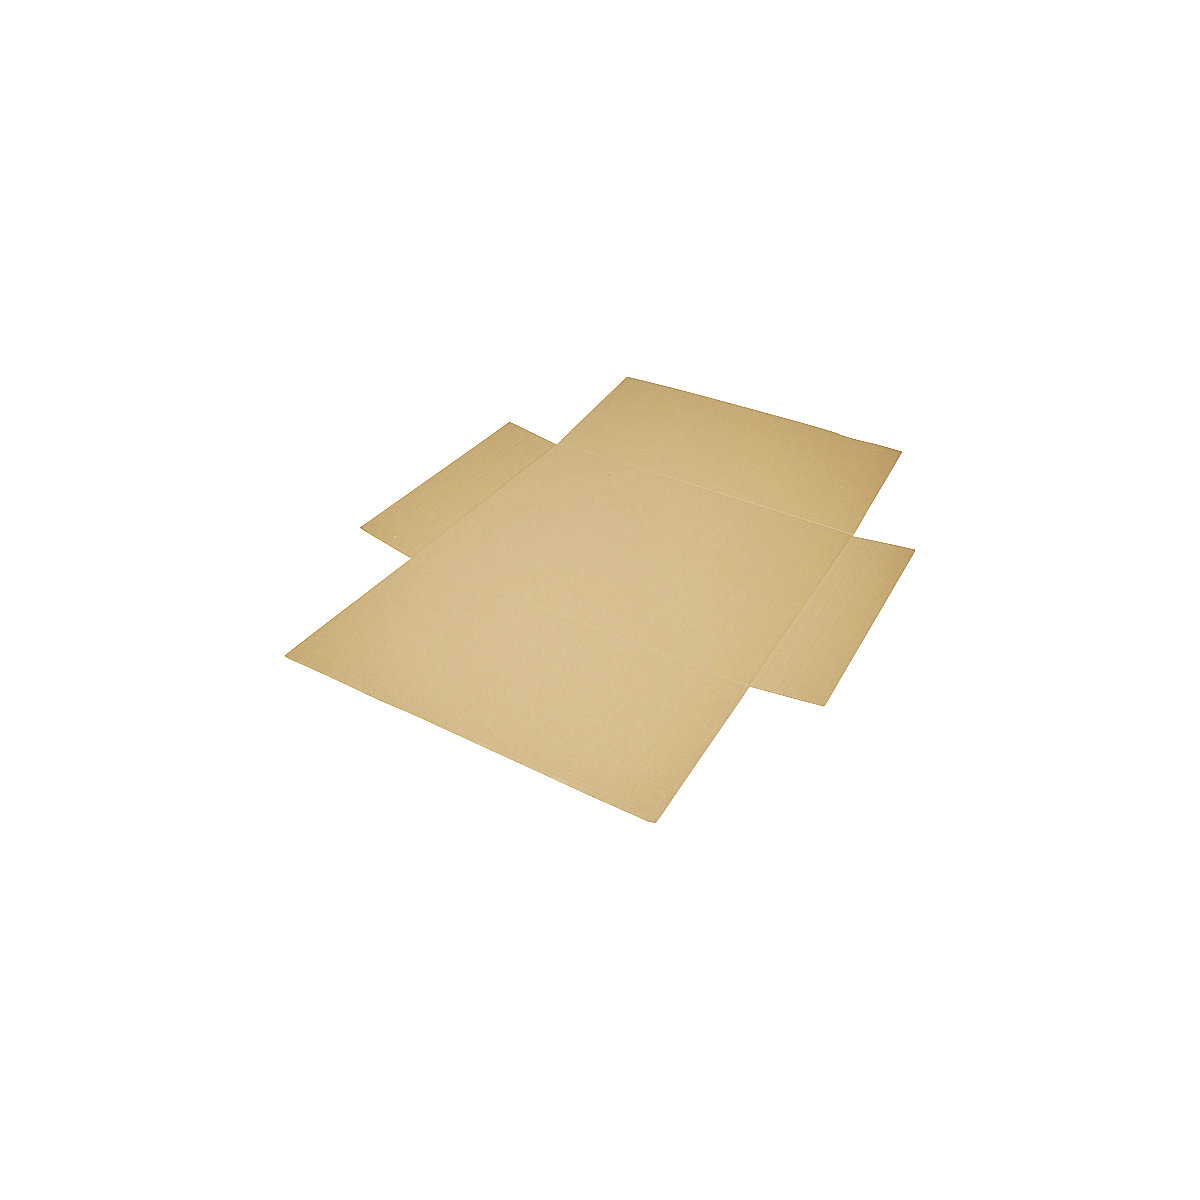 Imballaggio incrociato, in pezzo unico, a 1 parete, marrone, lungh. x largh. 600 x 425 mm, altezza di riempimento 50 mm, a partire da 30 pz.-6